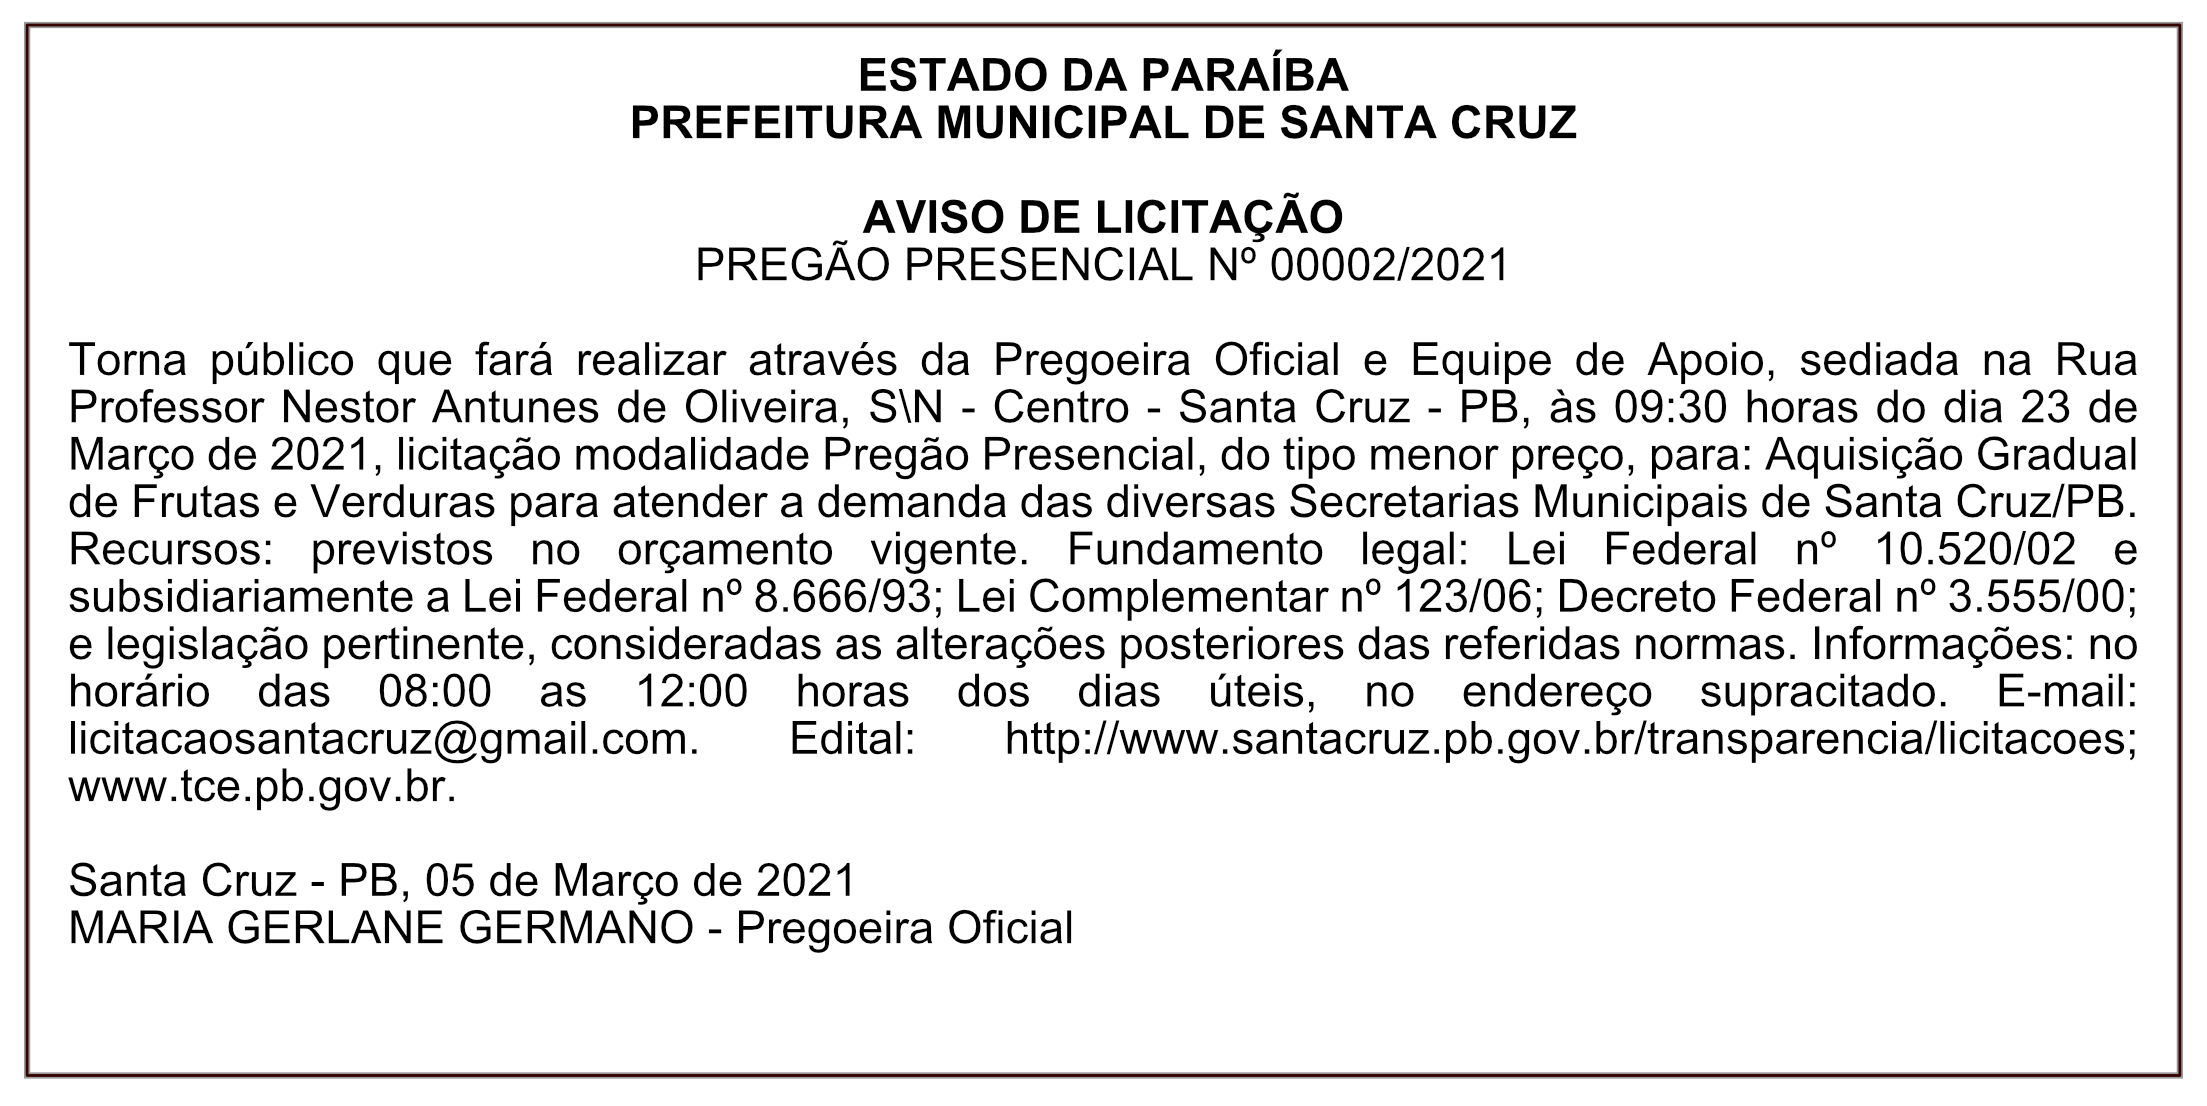 PREFEITURA MUNICIPAL DE SANTA CRUZ – AVISO DE LICITAÇÃO – PREGÃO PRESENCIAL Nº 00002/2021